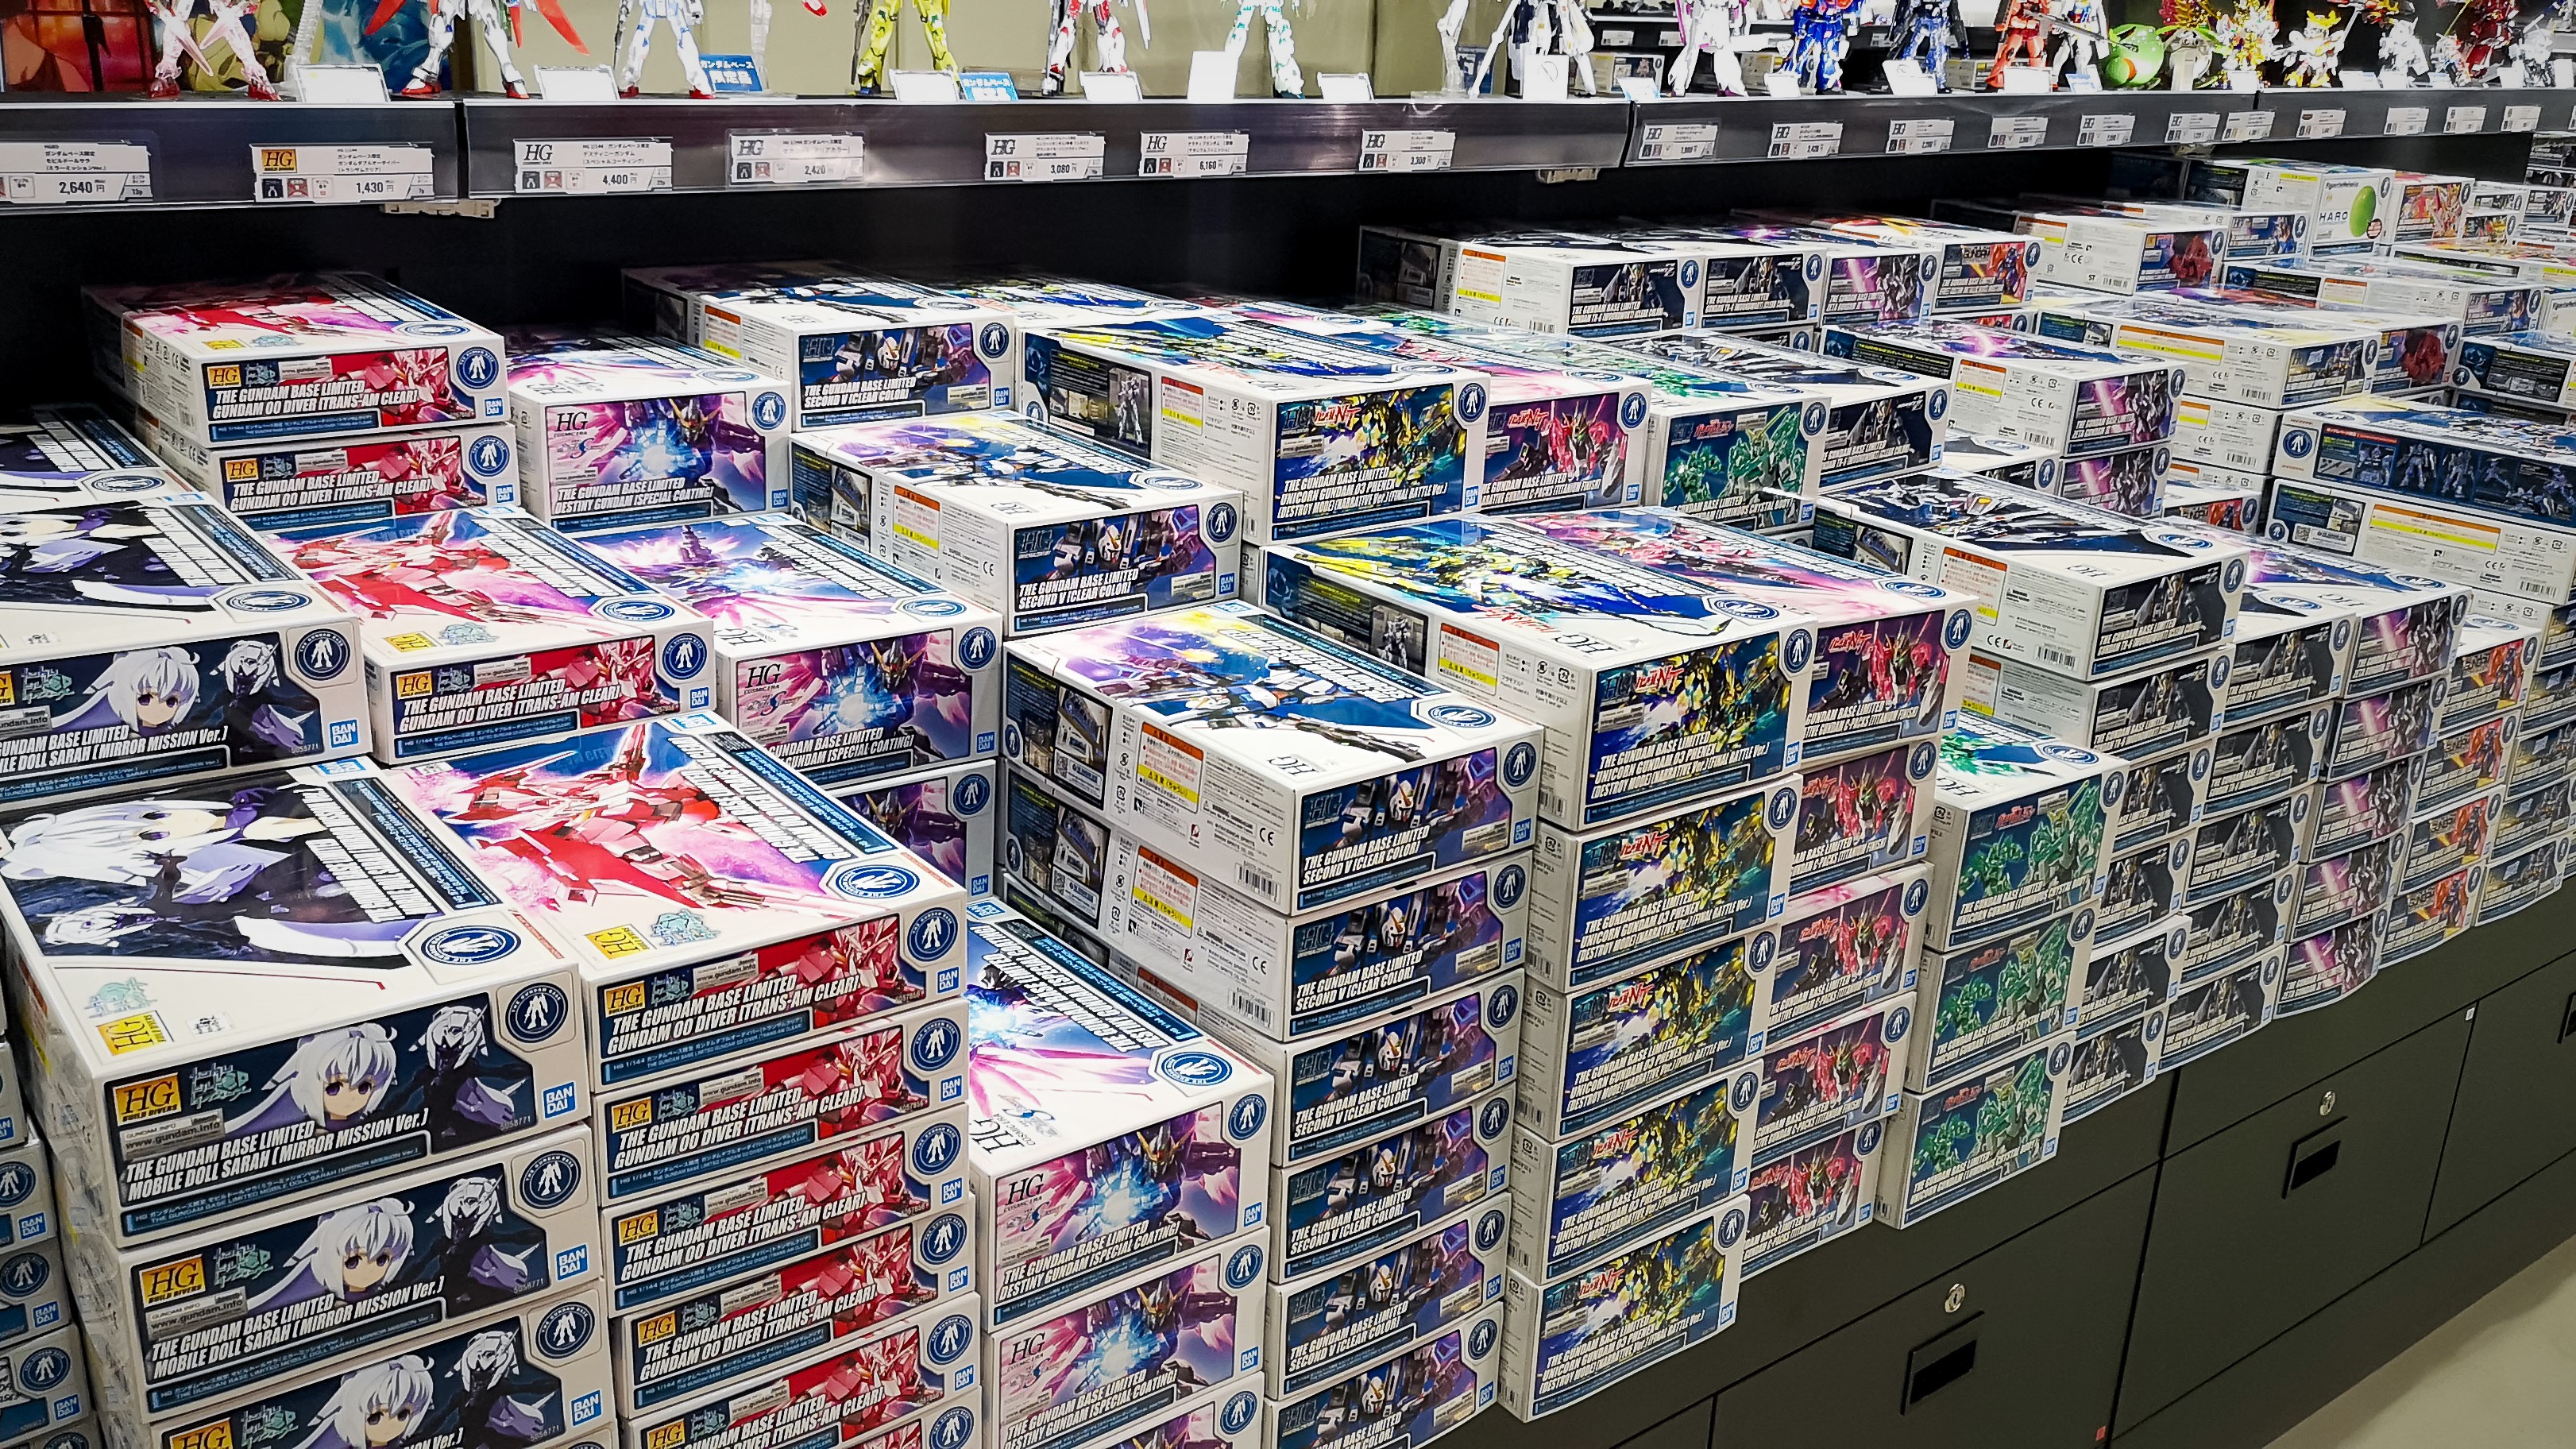 The Gundam Base 東京店情報 ガンダムベース東京は新年から様々なガンプラを取扱いしております 今回は本日の東京店店内をご紹介 限定商品の在庫情報はこちらをご確認ください T Co Ljtmx9yukj T Co 93kjbjhqvf Twitter